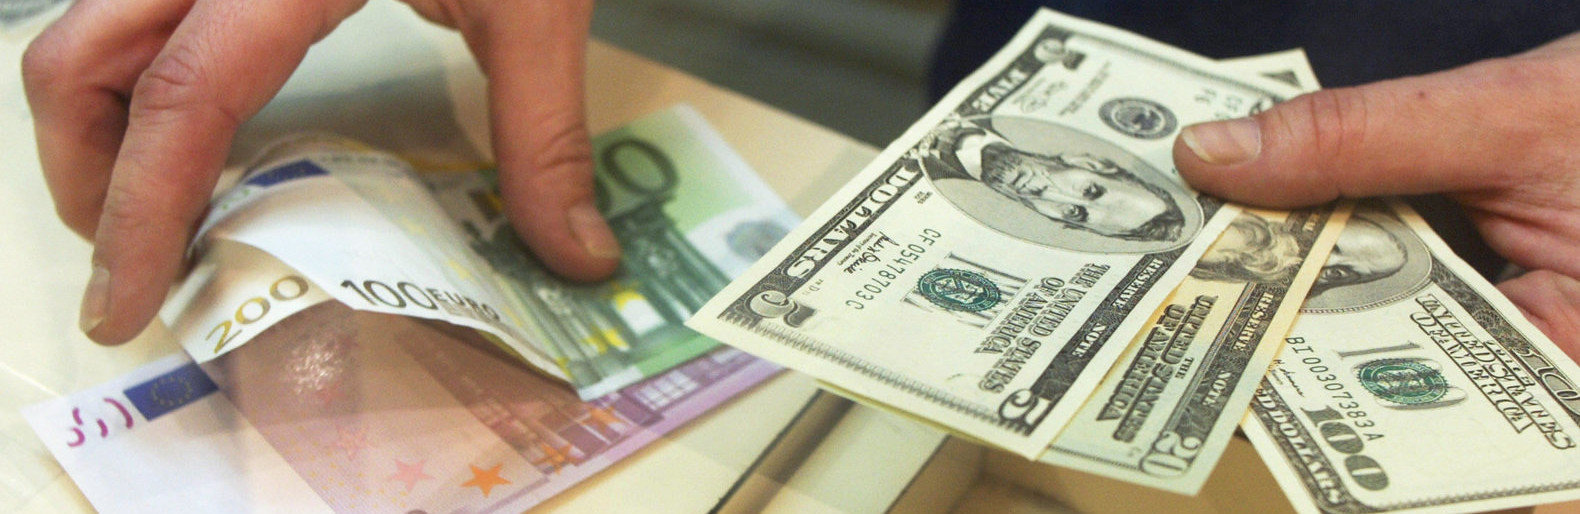 Обмен валют рославль как с биткоина вывести деньги на карту